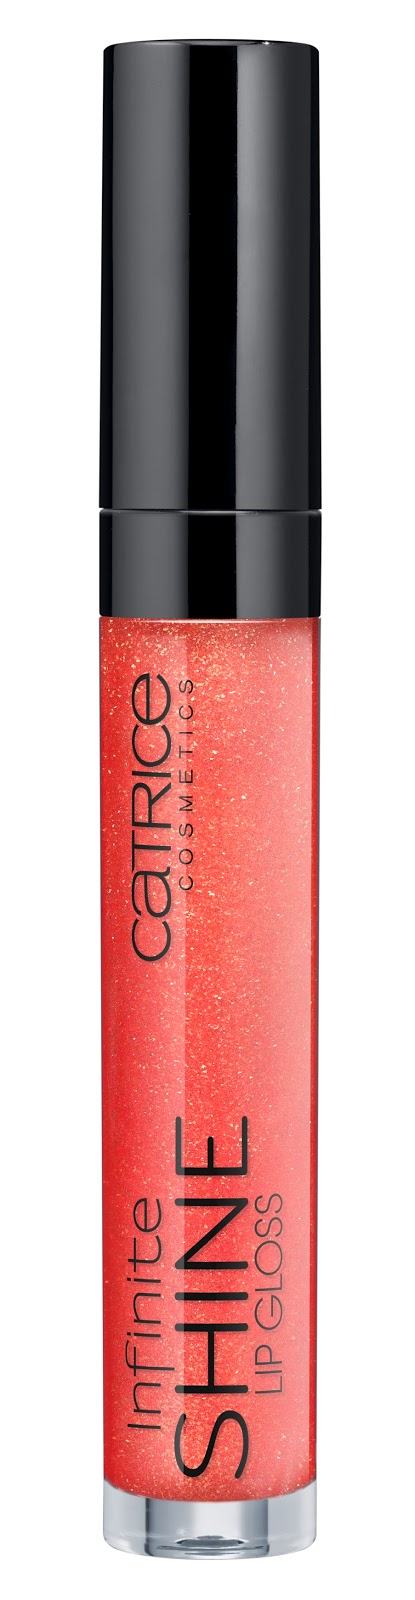 Catrice - Infinite Shine Lip Gloss